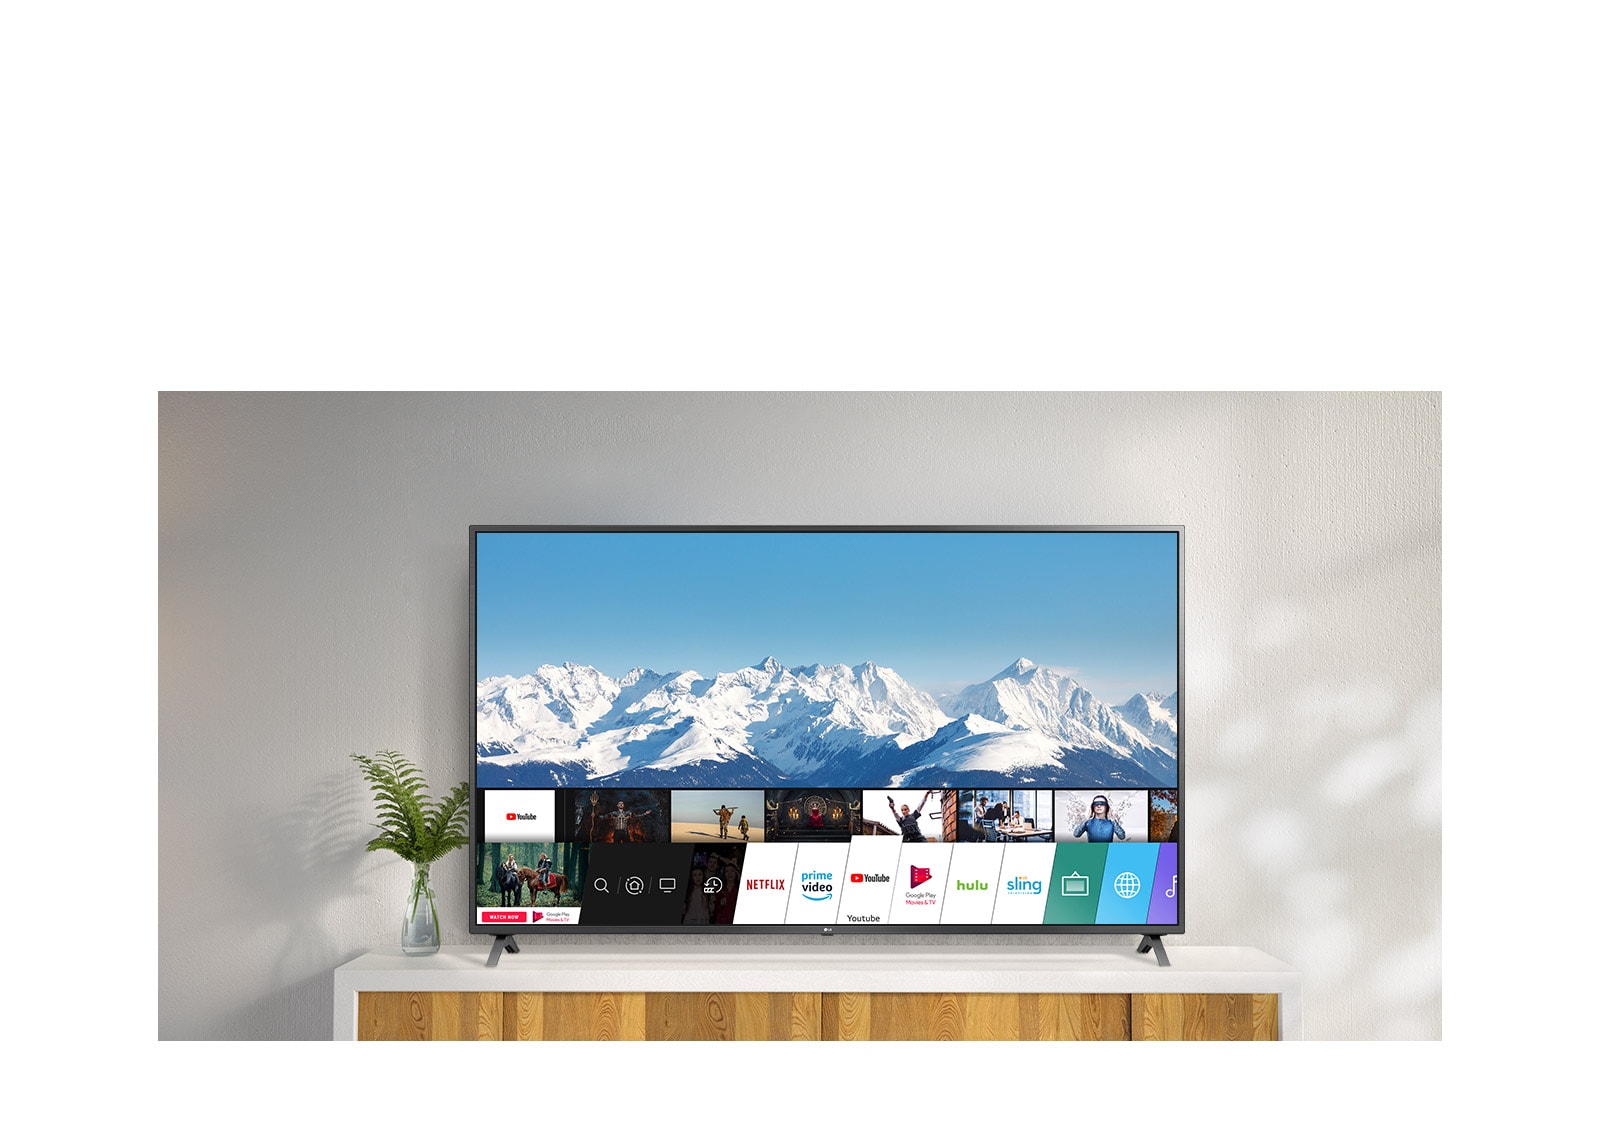 تلفزيون يقف على حامل أبيض مقابل جدار أبيض.  تعرض شاشة التلفزيون الشاشة الرئيسية مع webOS.